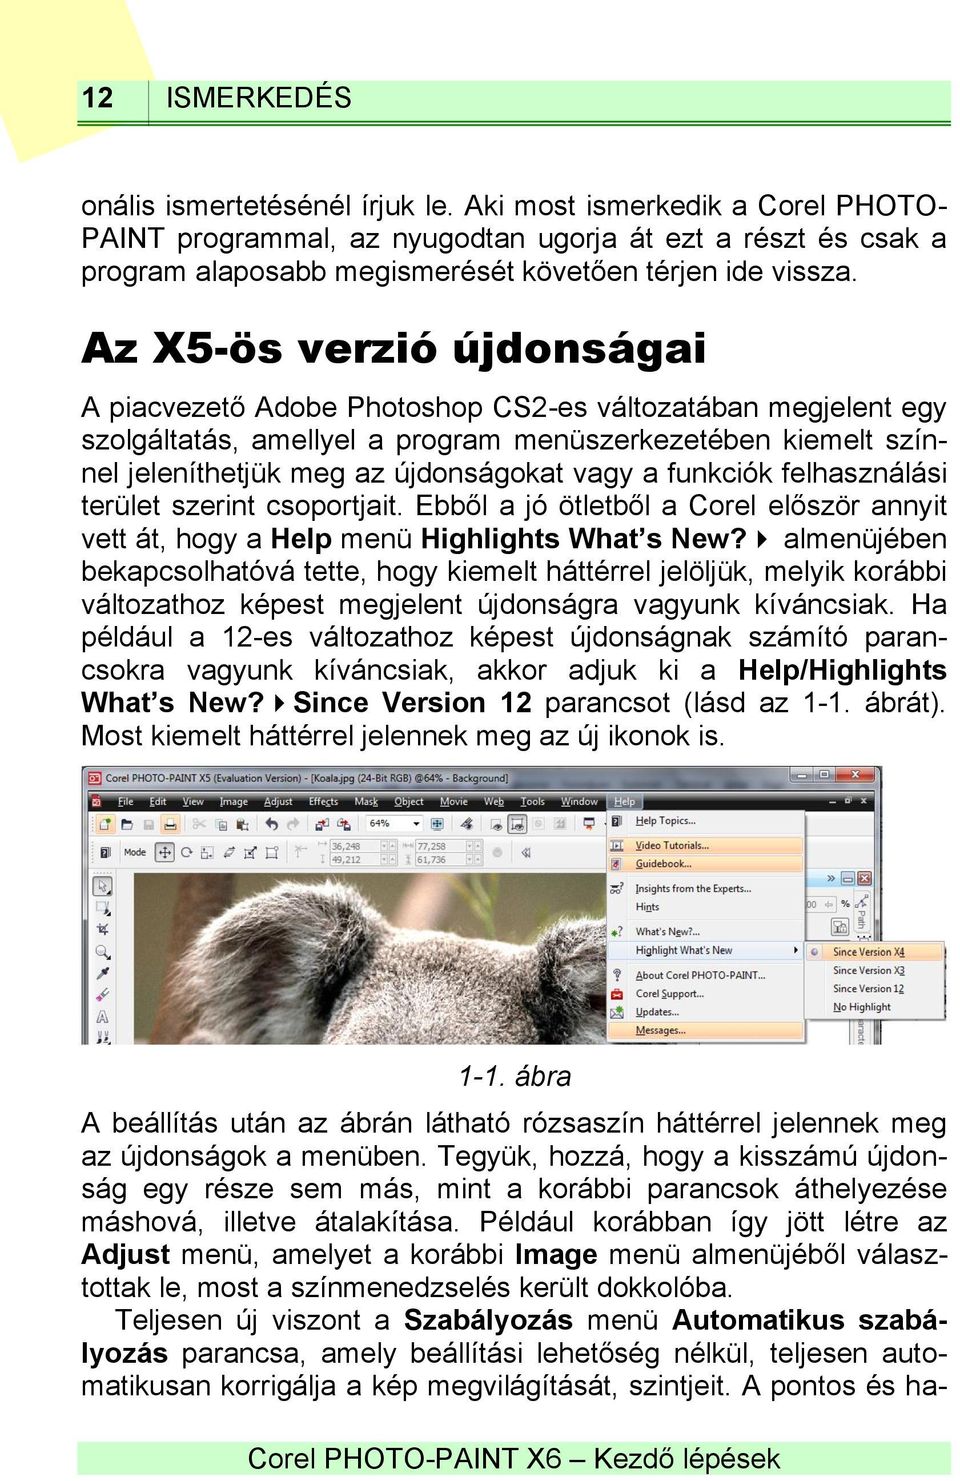 Az X5-ös verzió újdonságai A piacvezető Adobe Photoshop CS2-es változatában megjelent egy szolgáltatás, amellyel a program menüszerkezetében kiemelt színnel jeleníthetjük meg az újdonságokat vagy a